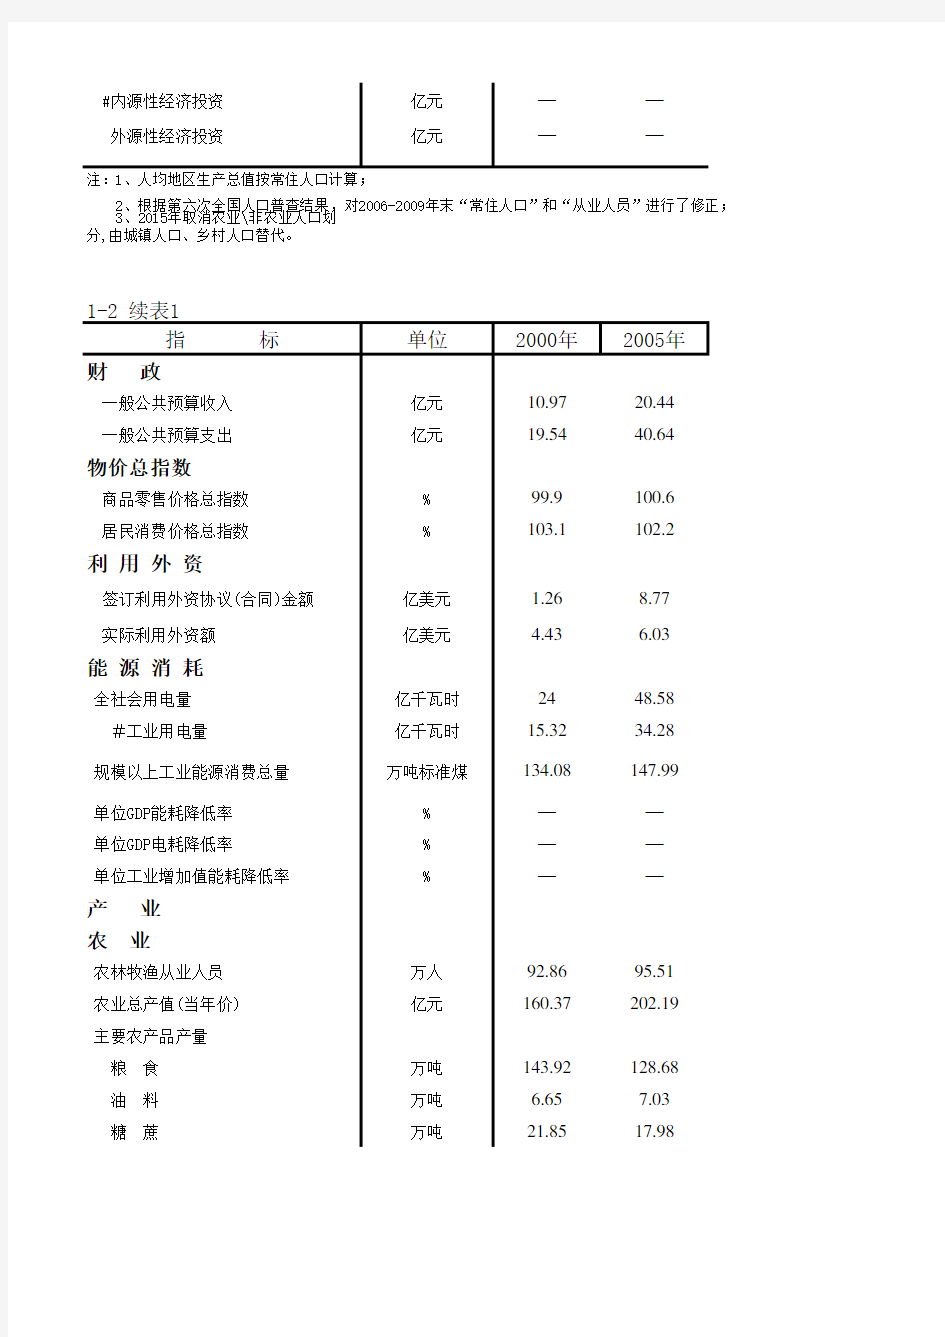 肇庆市社会经济发展指标数据：1-2  国民经济和社会发展总量指标(2000-2018)